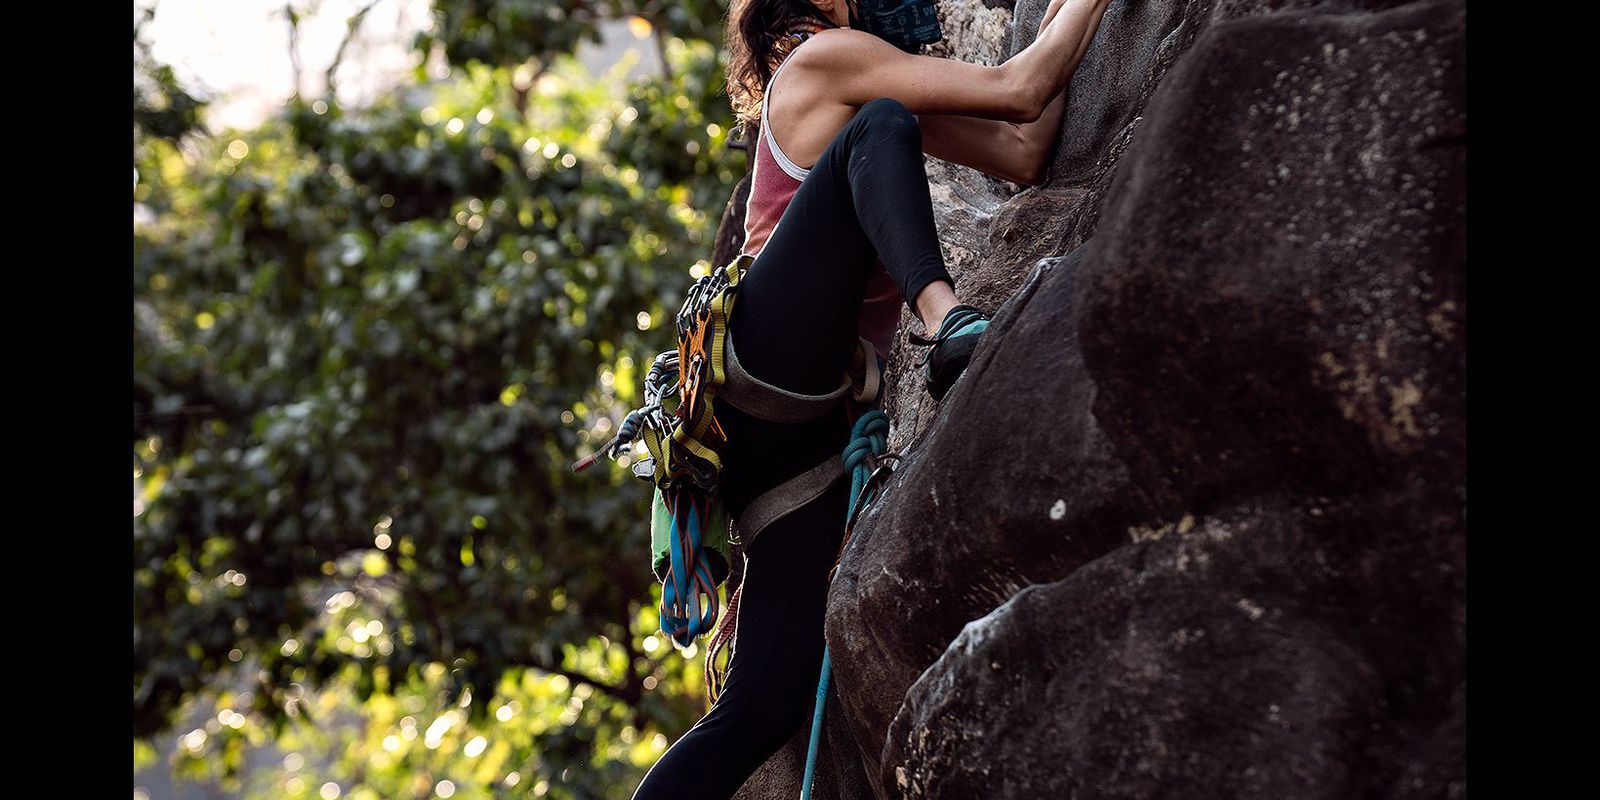 Column – Marina Dias and the paralympic dream of paraclimbing